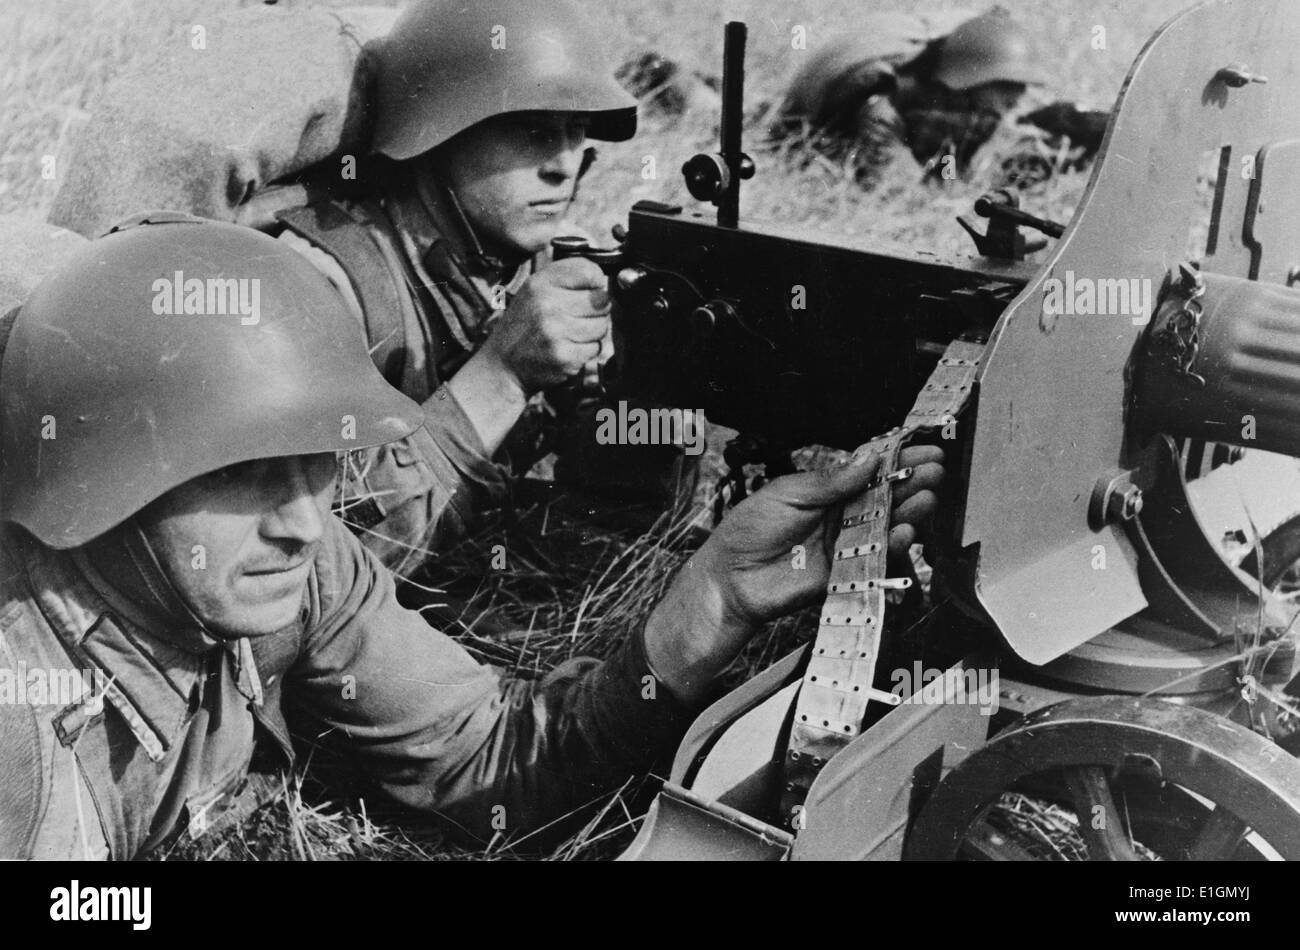 Photographie montrant des exercices pratiques de l'Armée Rouge à l'extrême est du territoire de l'URSS (Union des Républiques socialistes soviétiques). Datée 1939 Banque D'Images